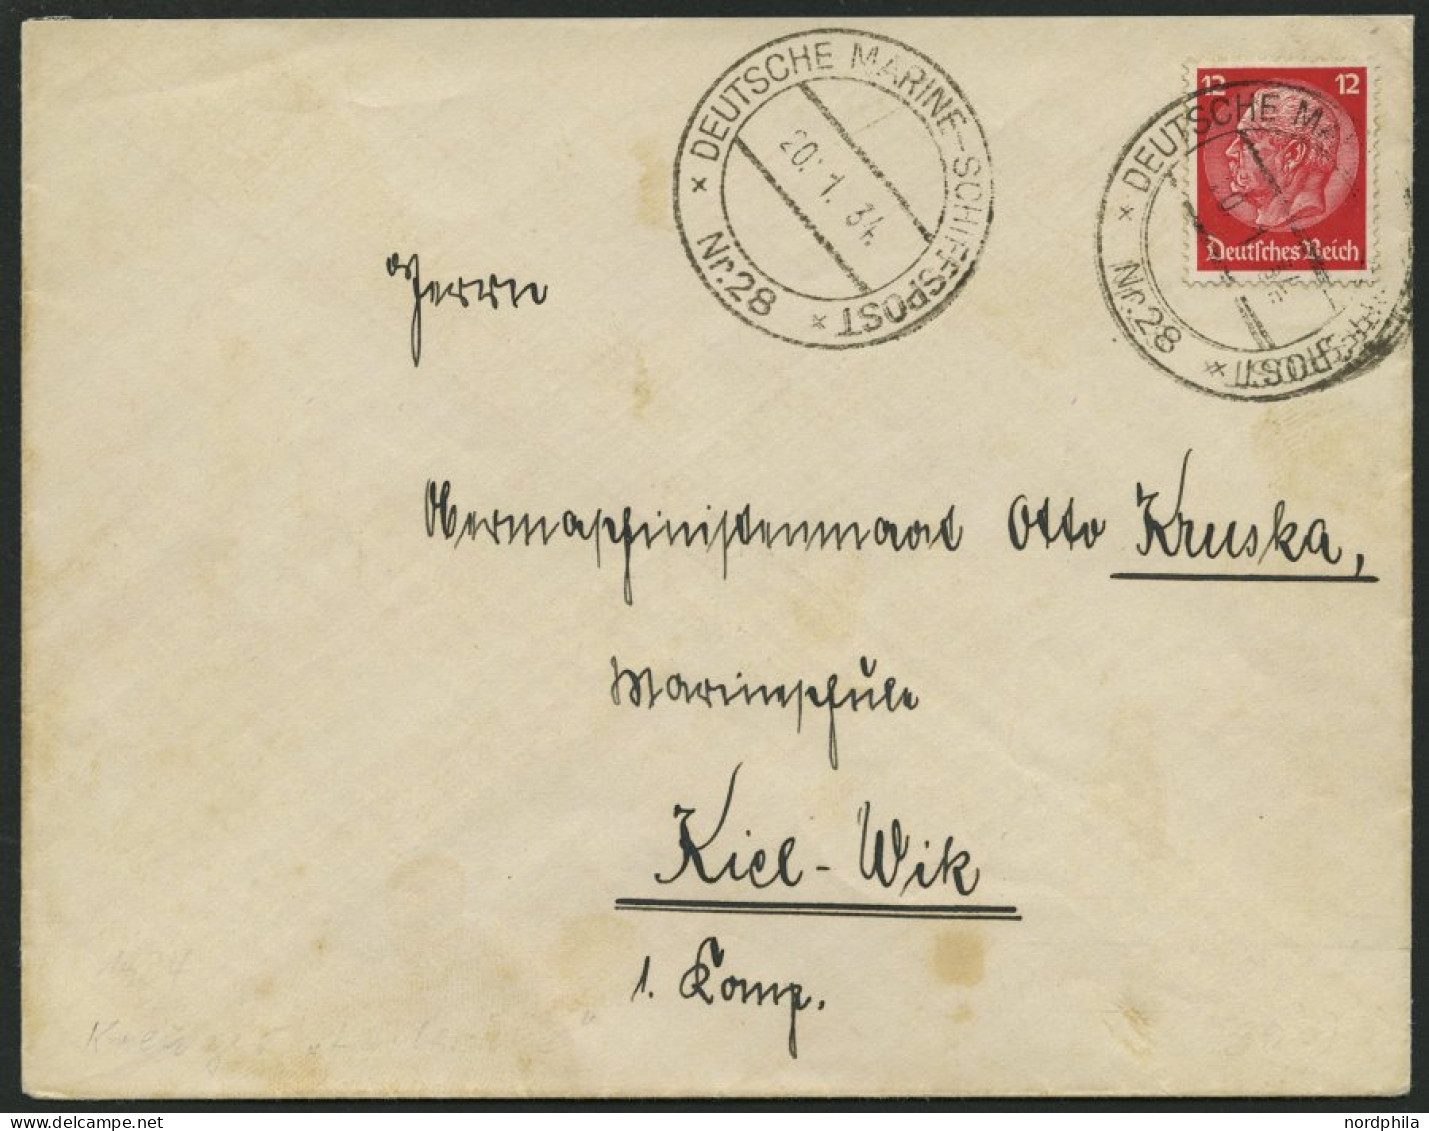 MSP VON 1920 - 1940 DR 487 BRIEF, 28 (Kreuzer KARLSRUHE), 20.1.1934, Etwas Fleckiger Prachtbrief Nach Kiel - Maritime